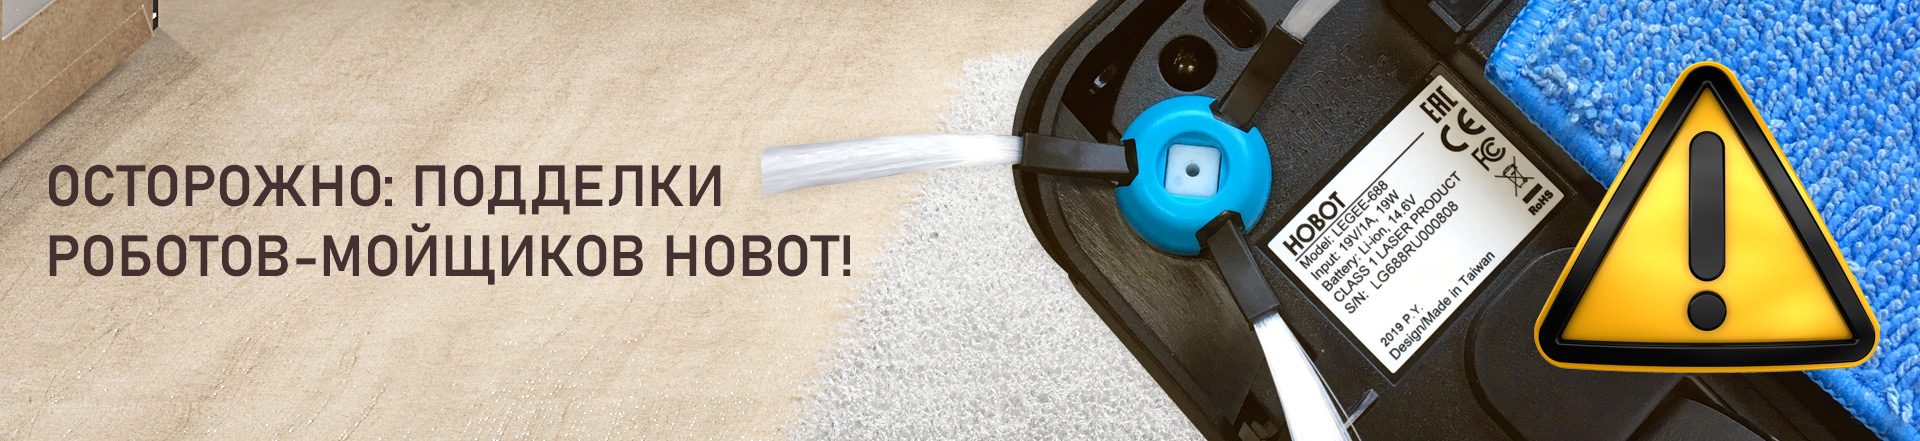 Осторожно: подделки роботов-мойщиков Hobot!